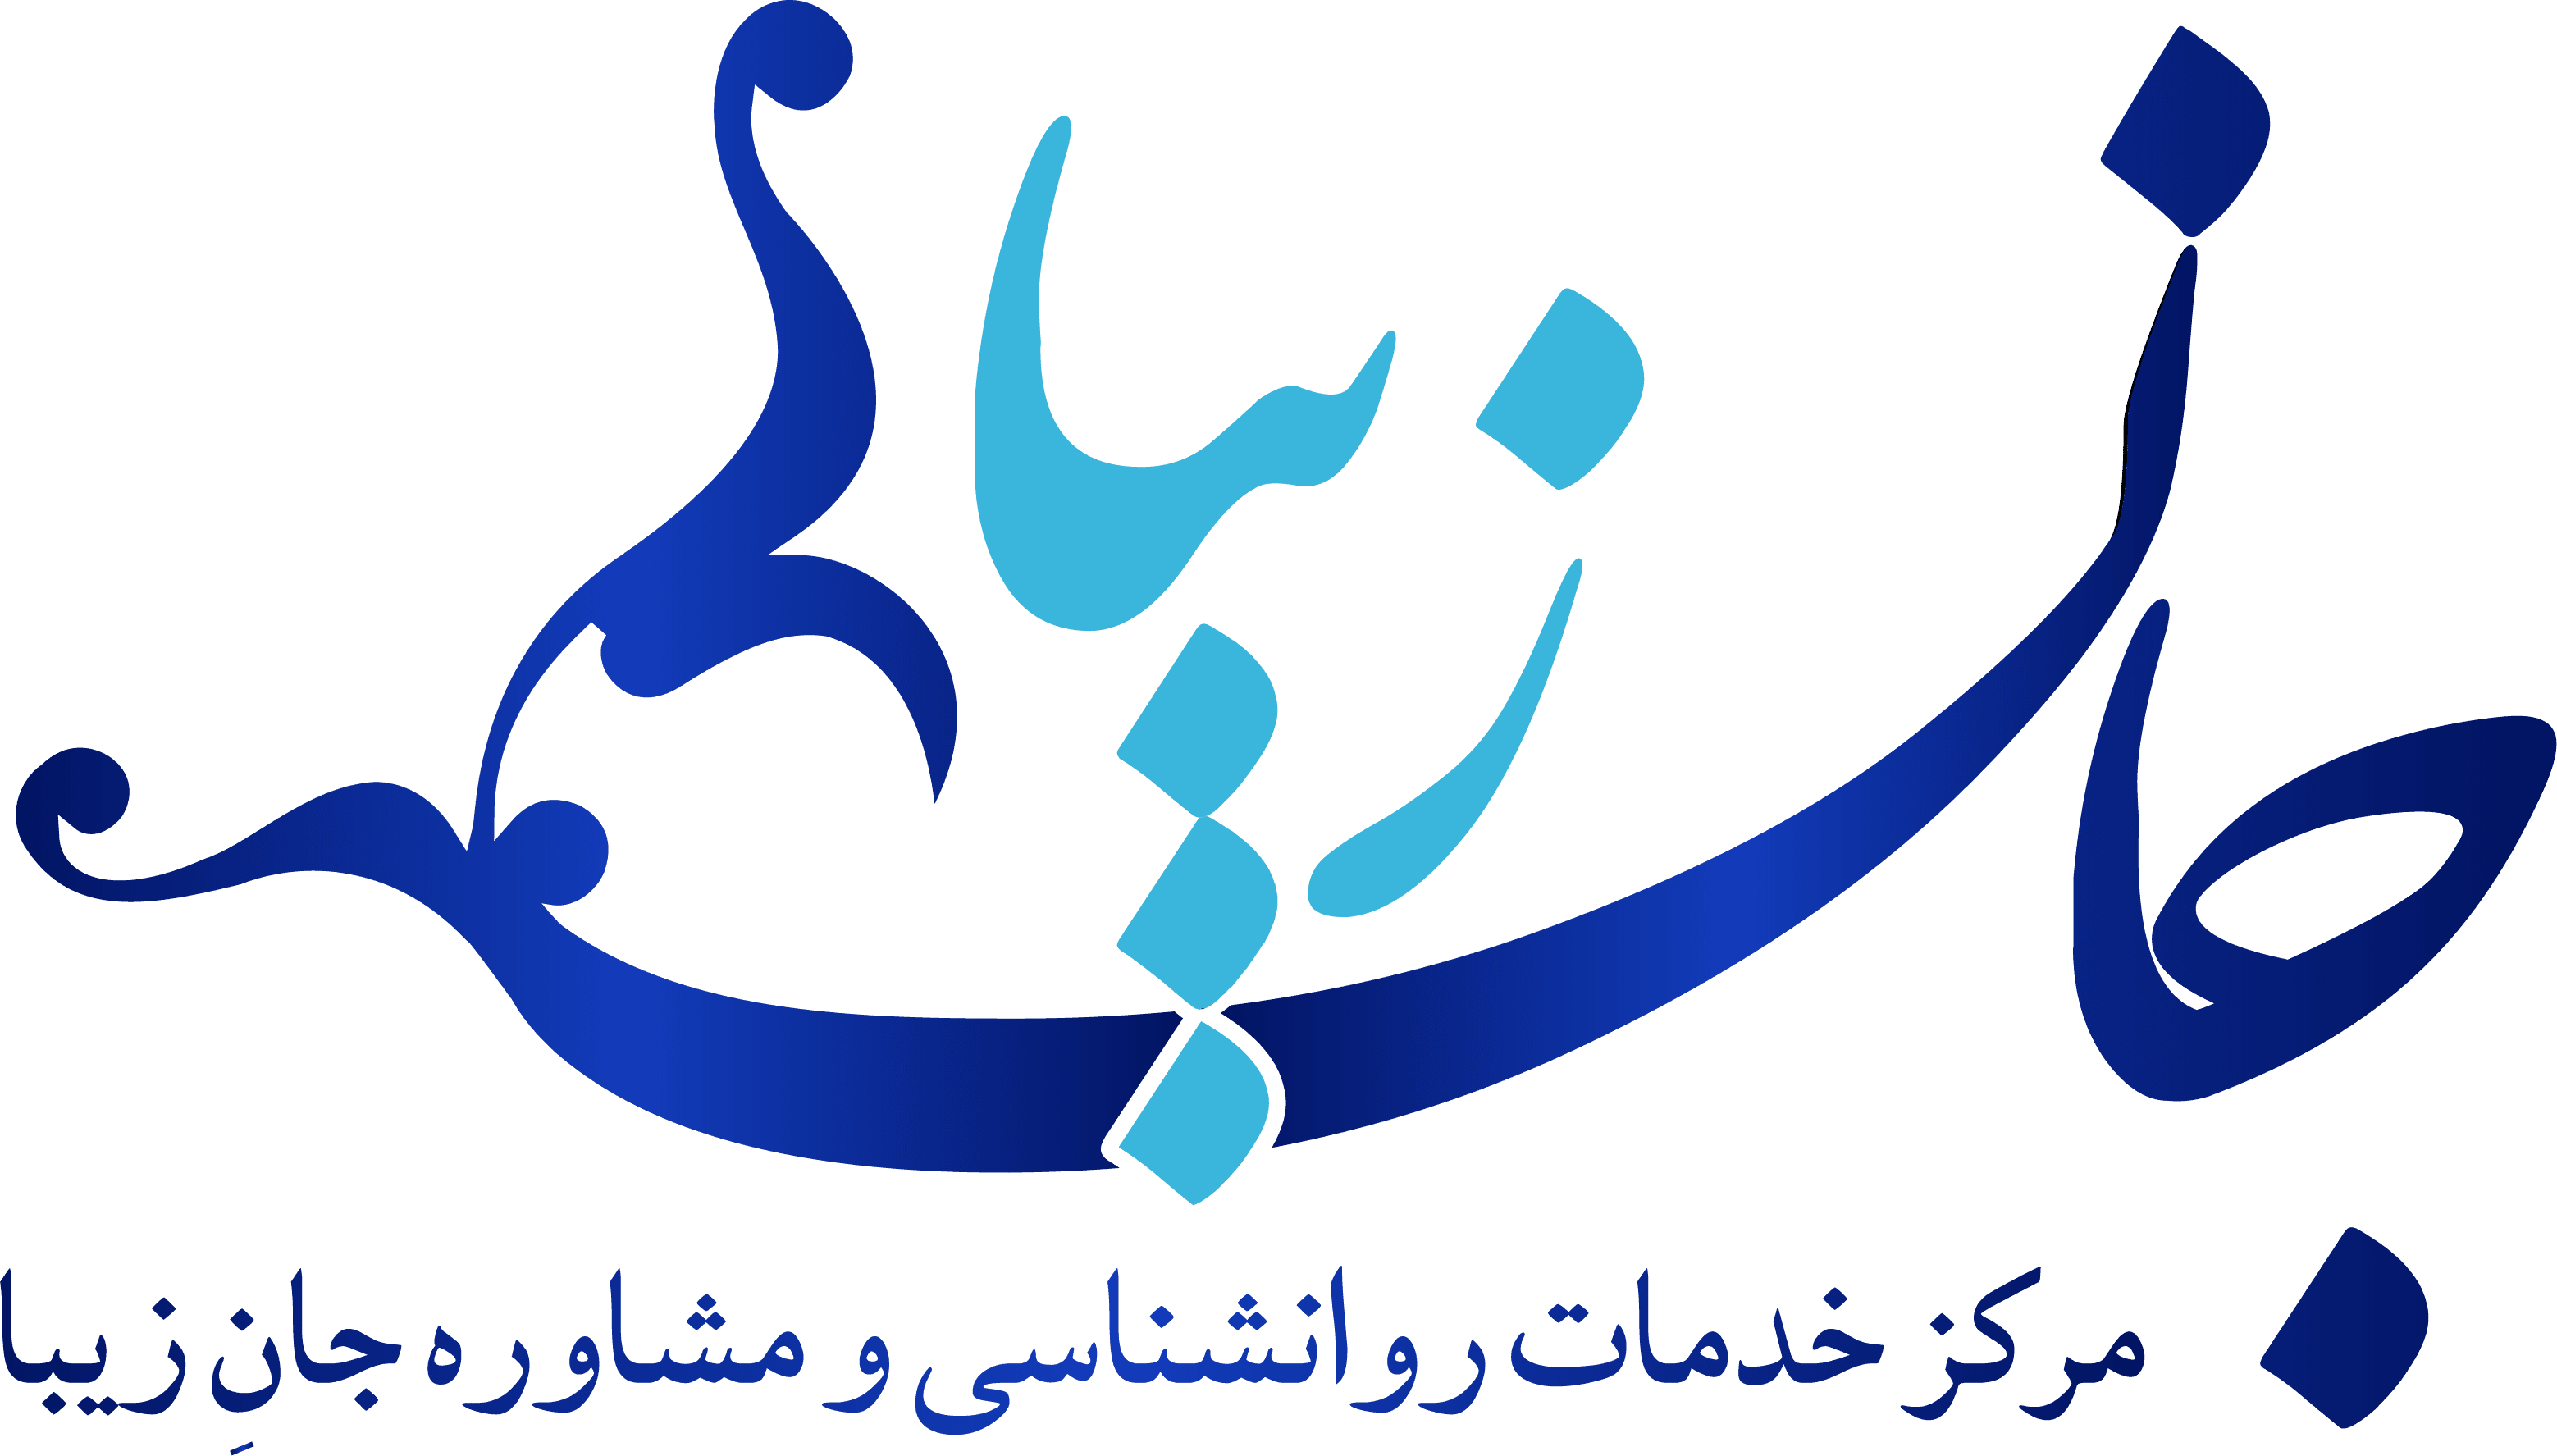 کلینیک مرکز خدمات روانشناسی و مشاوره جان زیبا در تهران